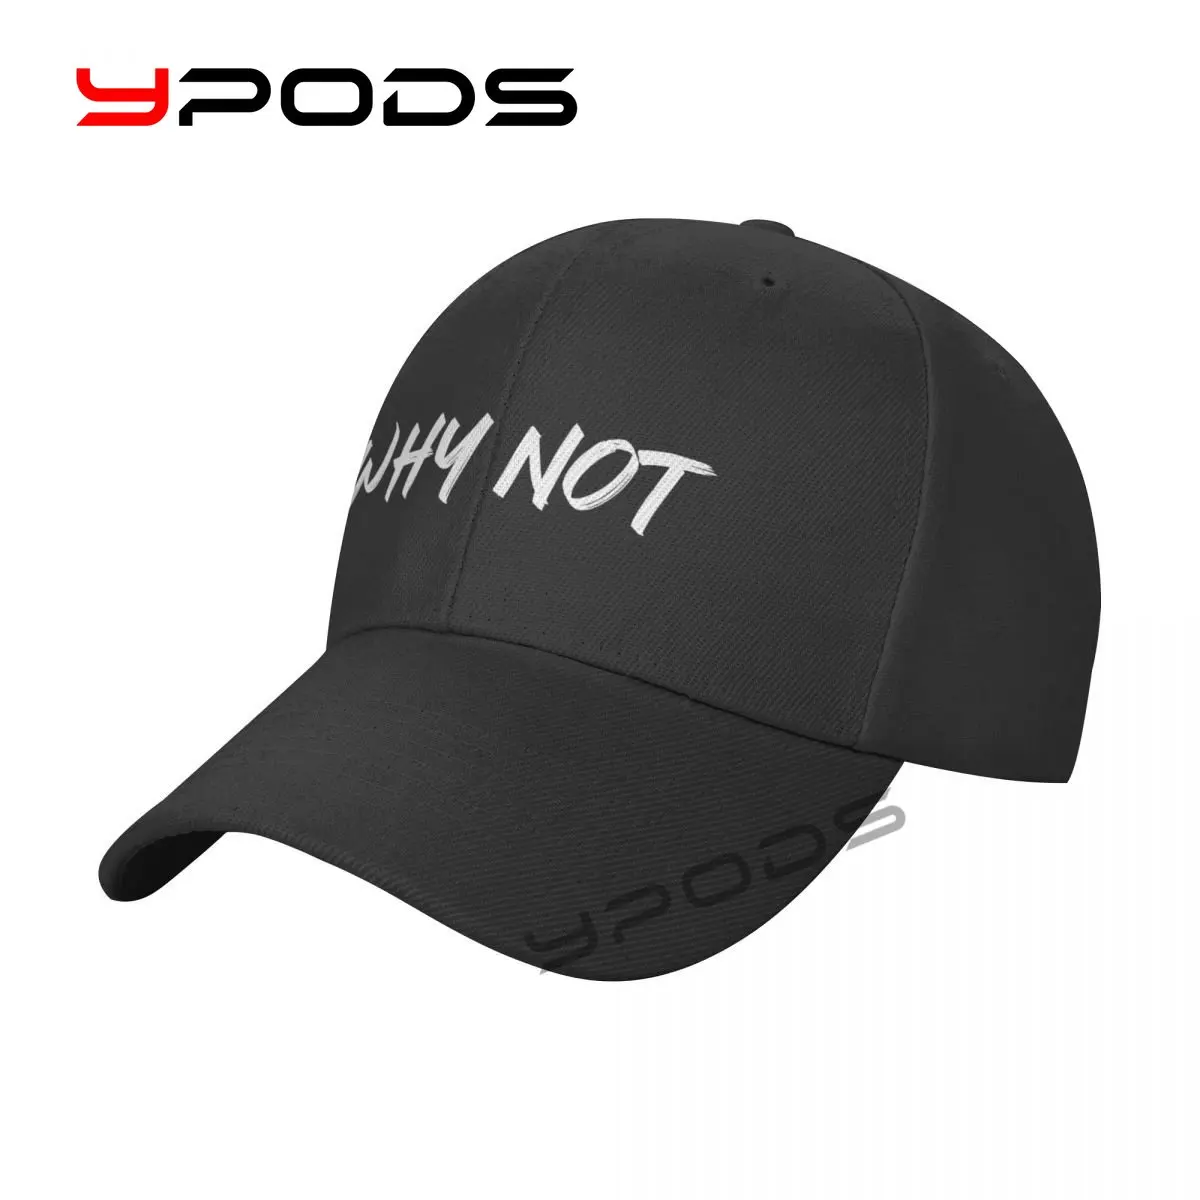 

Men's Baseball Caps WHY NOT Women Summer Snapback Cap Adjustable Outdoor Sport Sun Hat